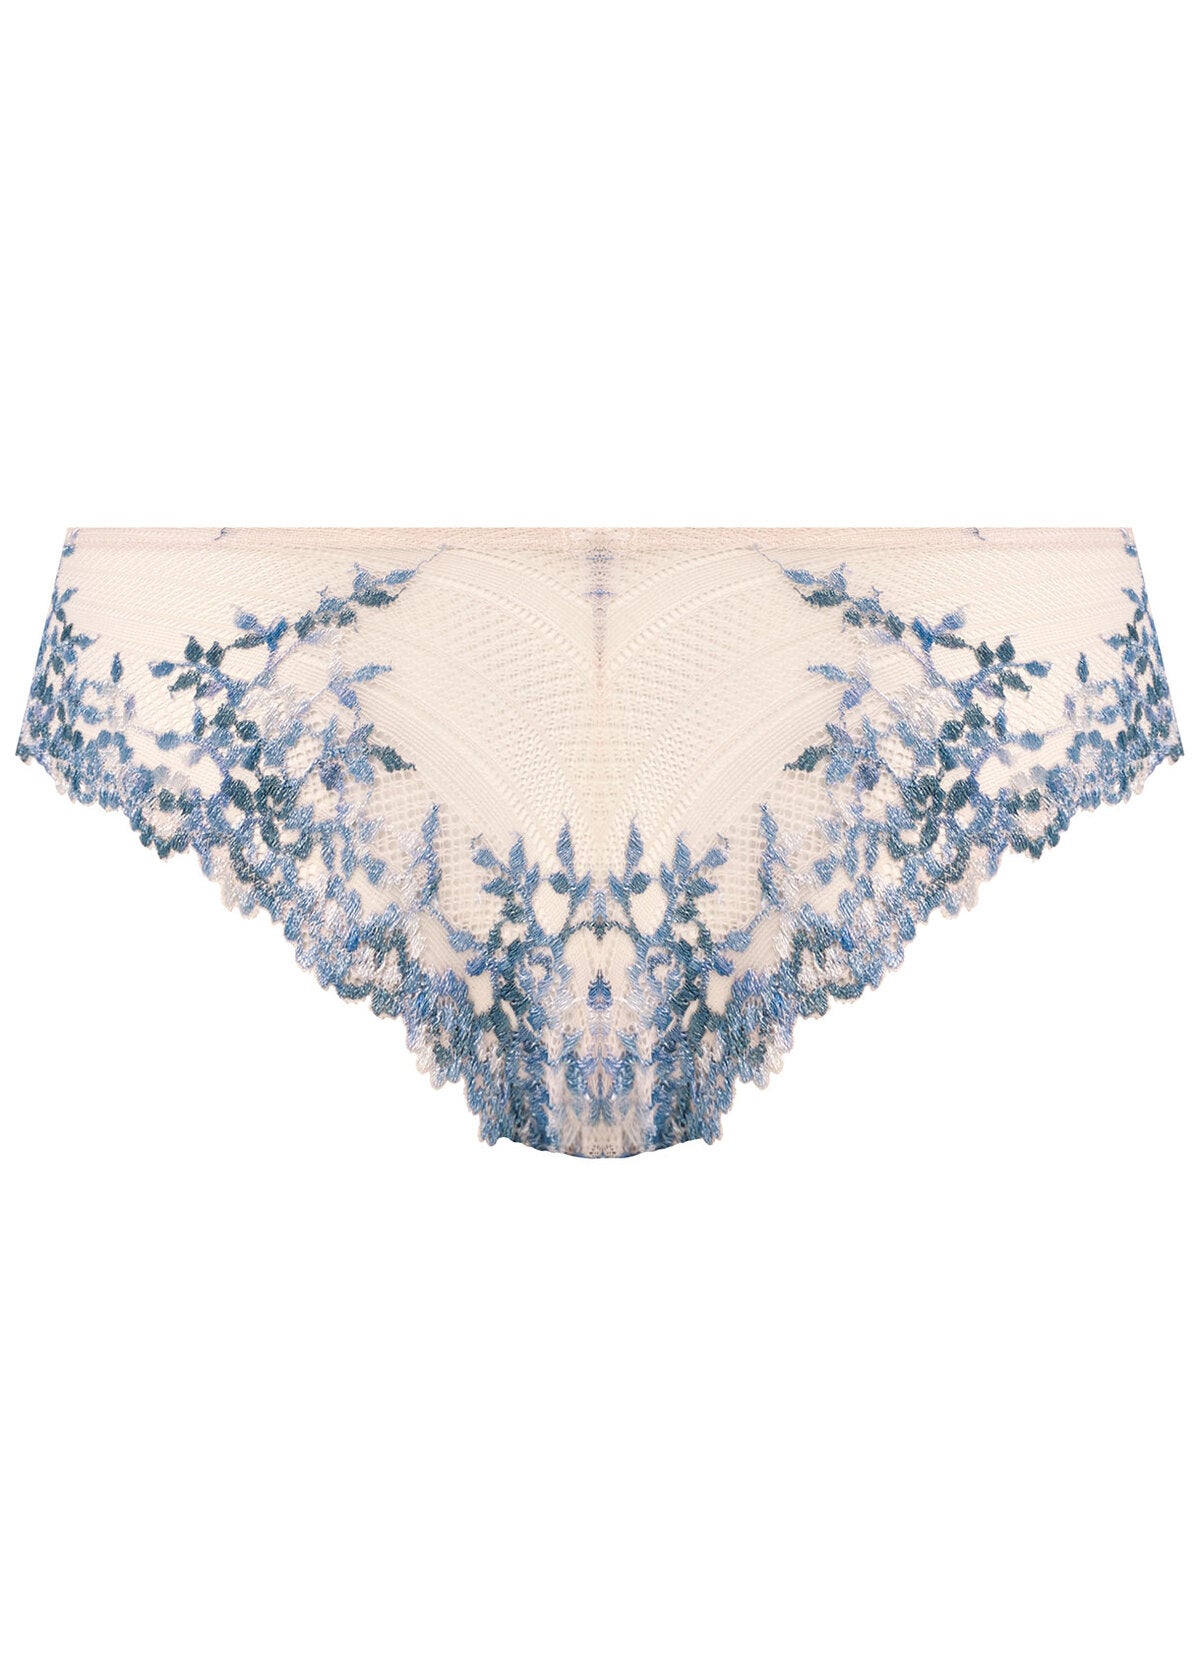 Wacoal Embrace Lace Contour Bra - Pastel Parchment/ Blue Multi